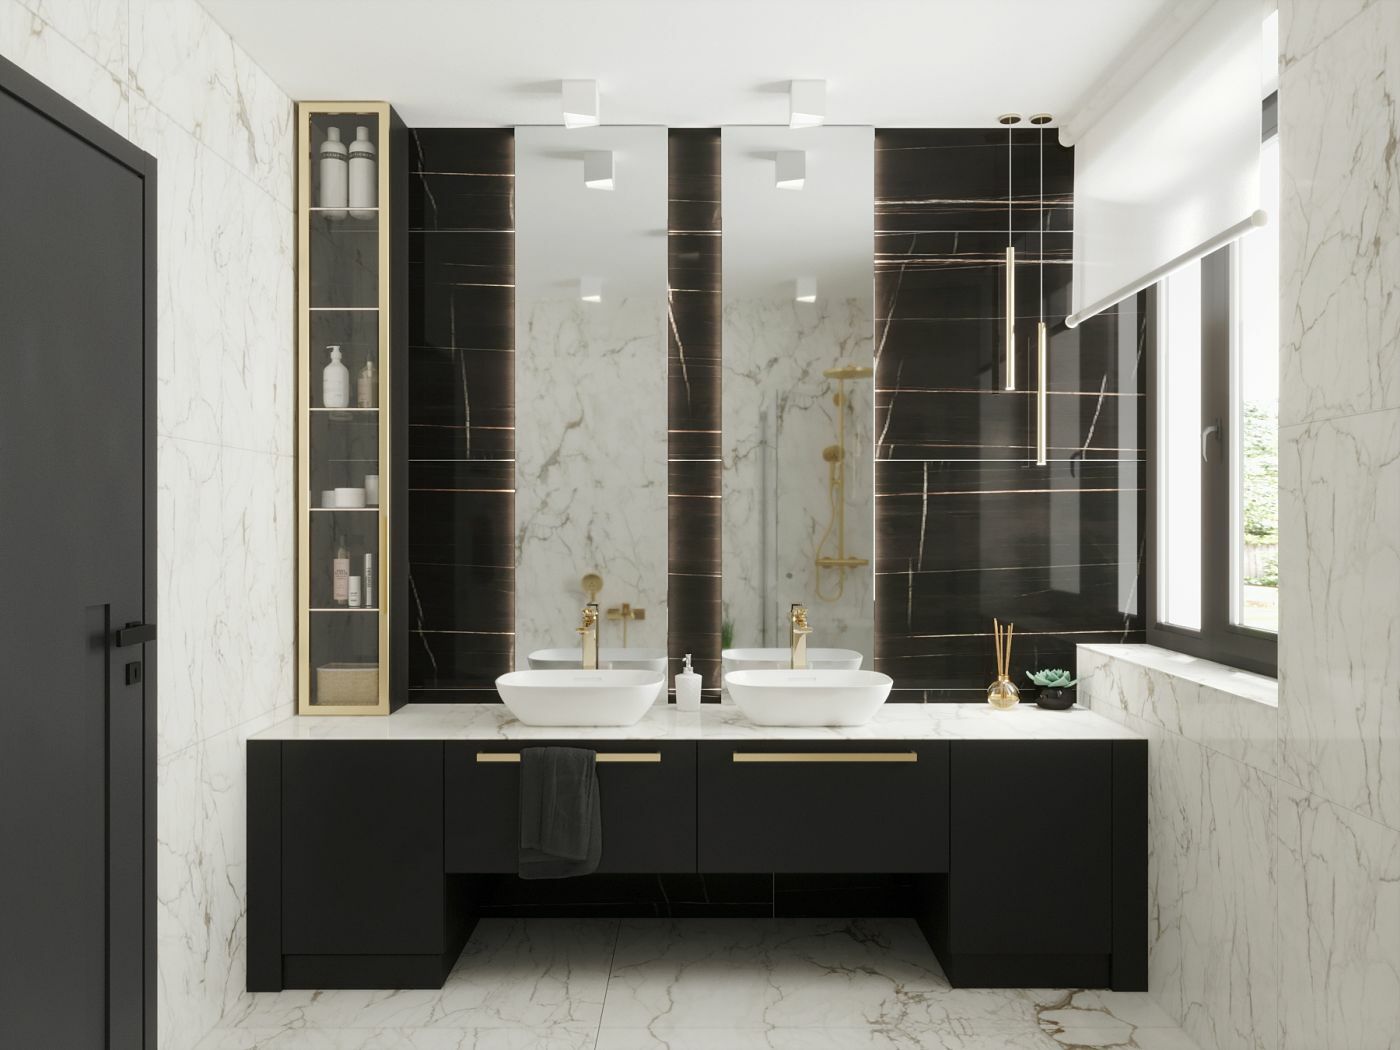 Páratlanul szép kőmintás burkolatok adnak luxus érzést a fürdőszobához